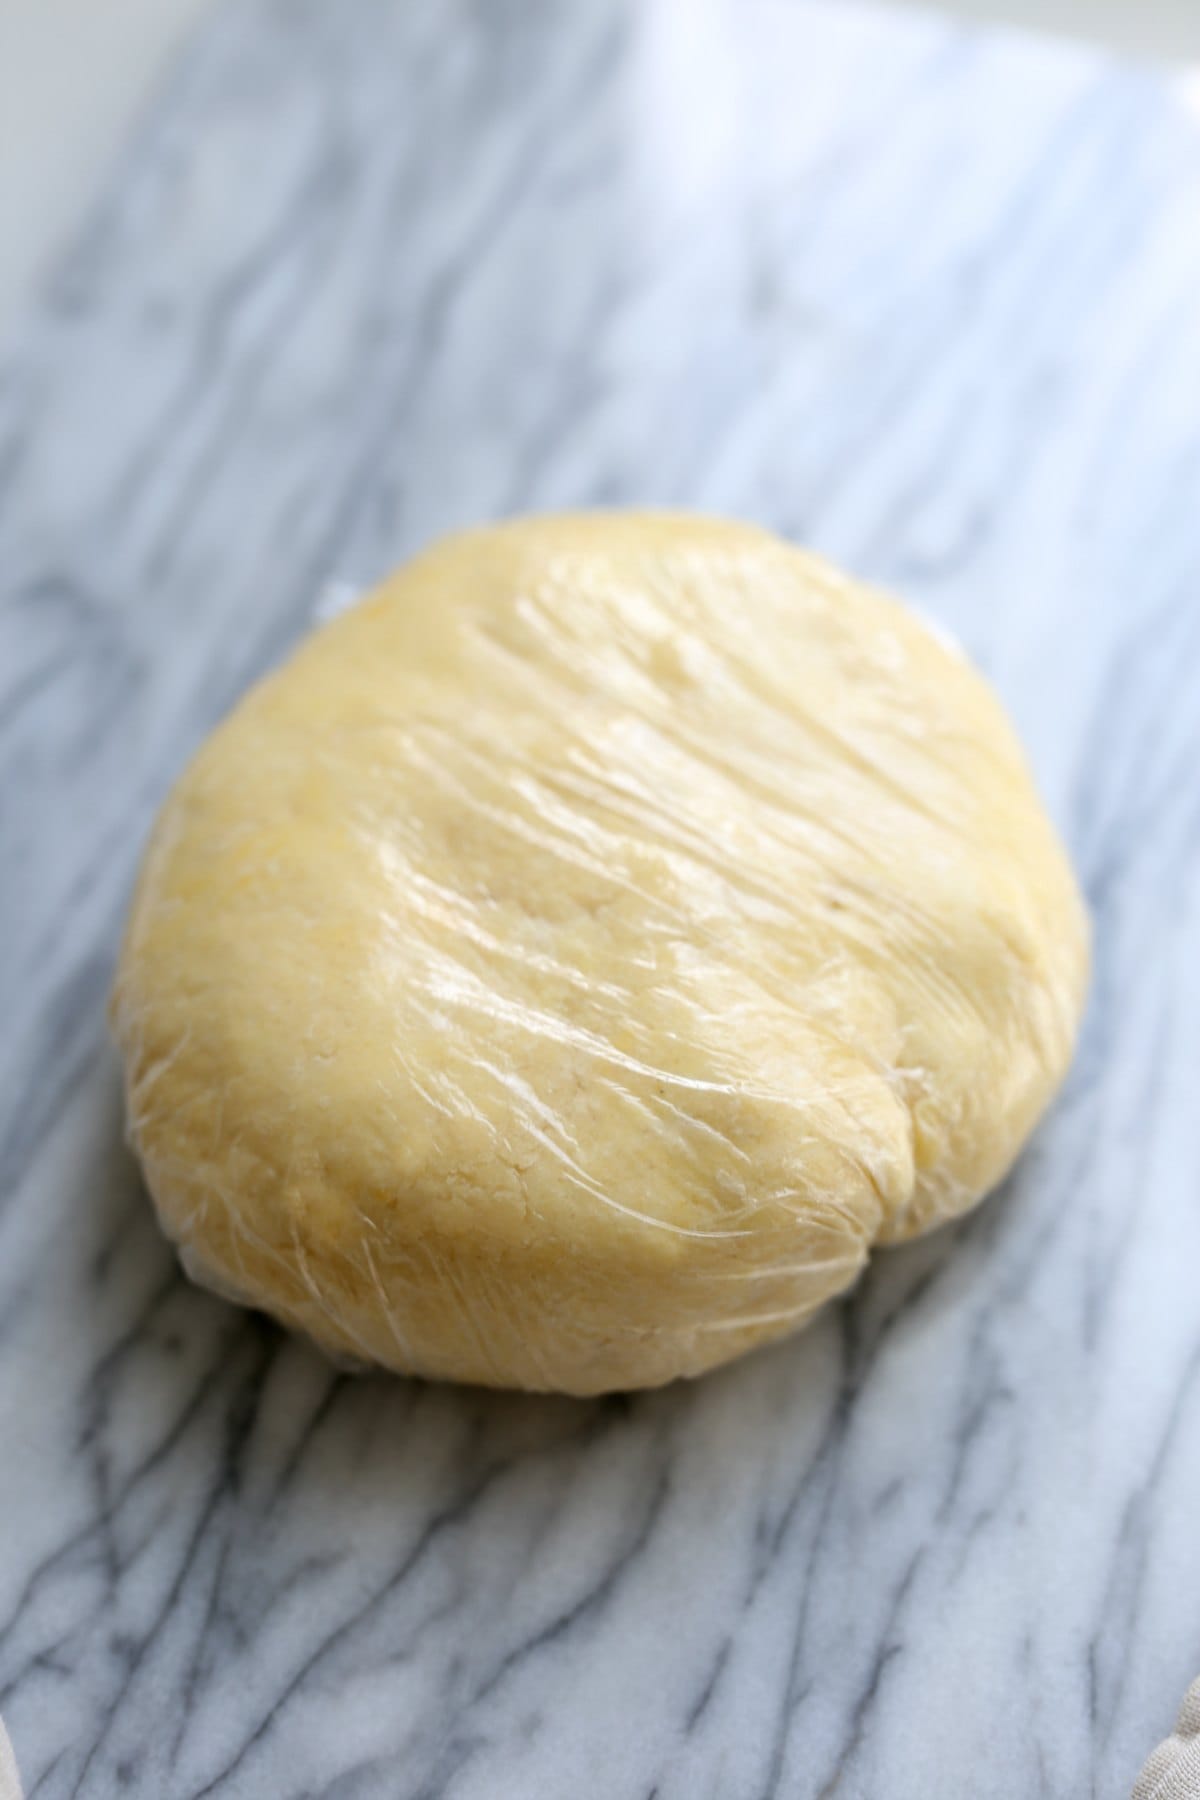 Gluten-free pie dough to make chicken pot pie.